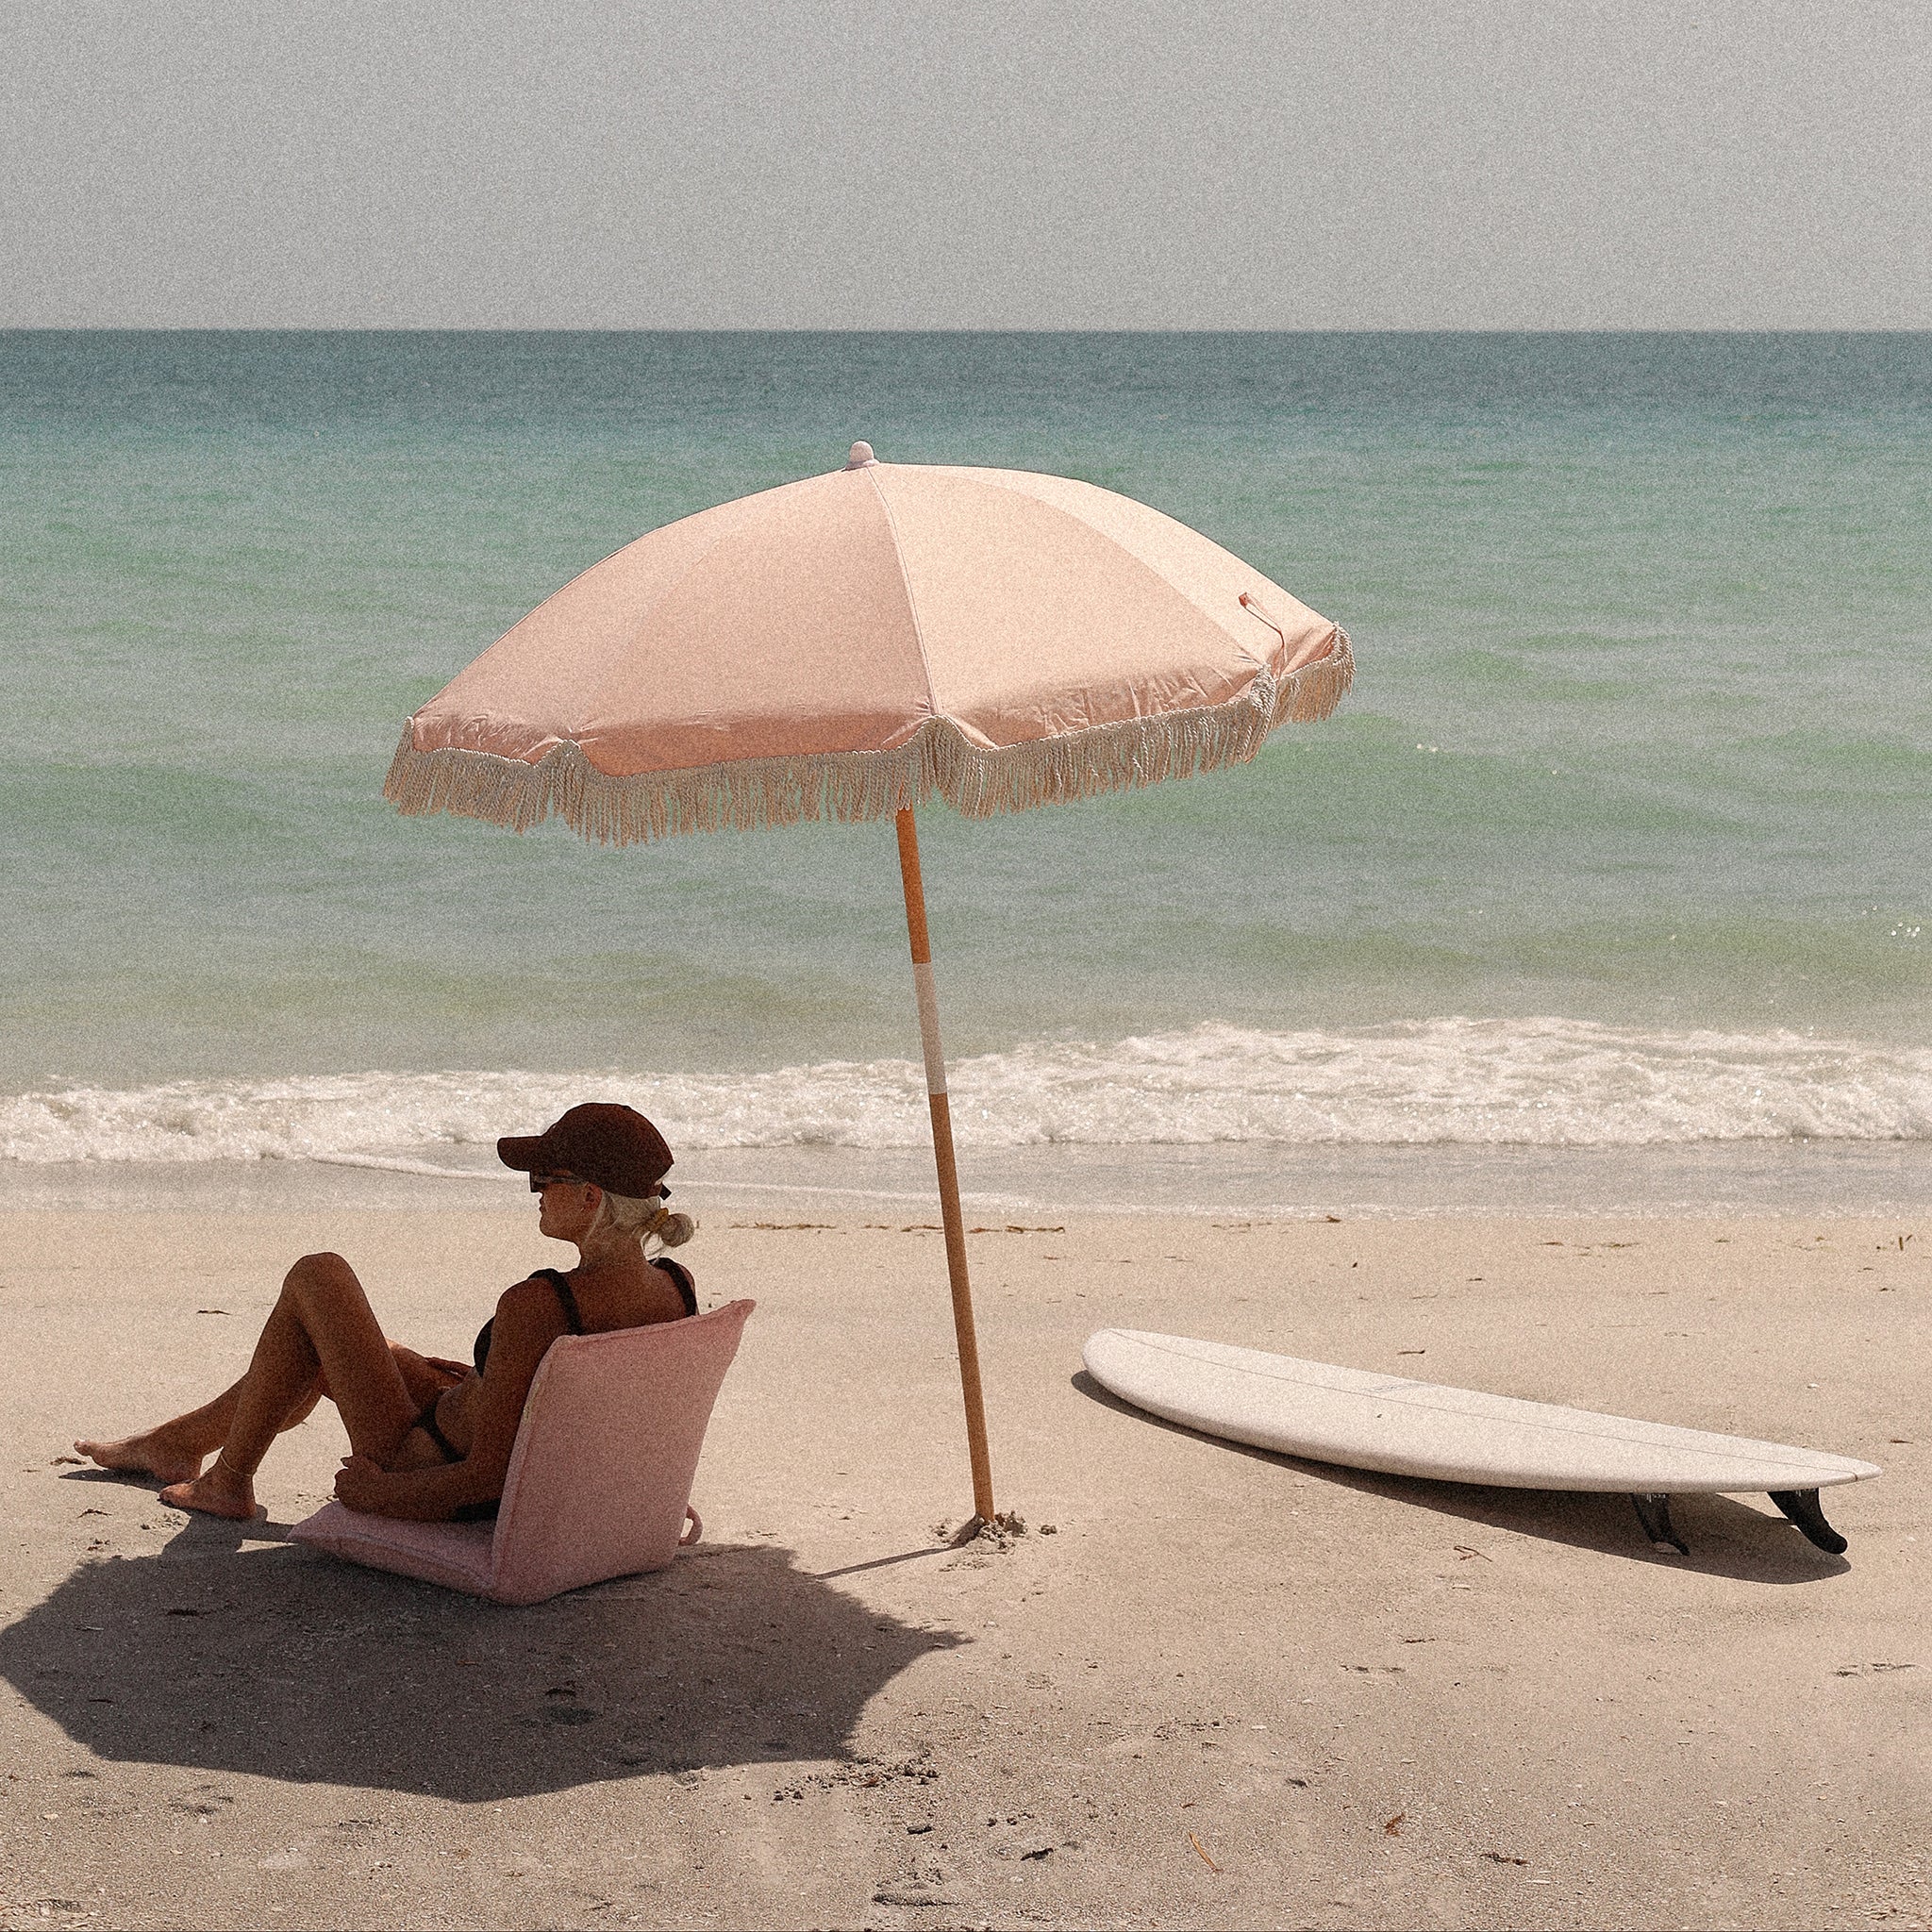 Parasol de plage de luxe | Saumon